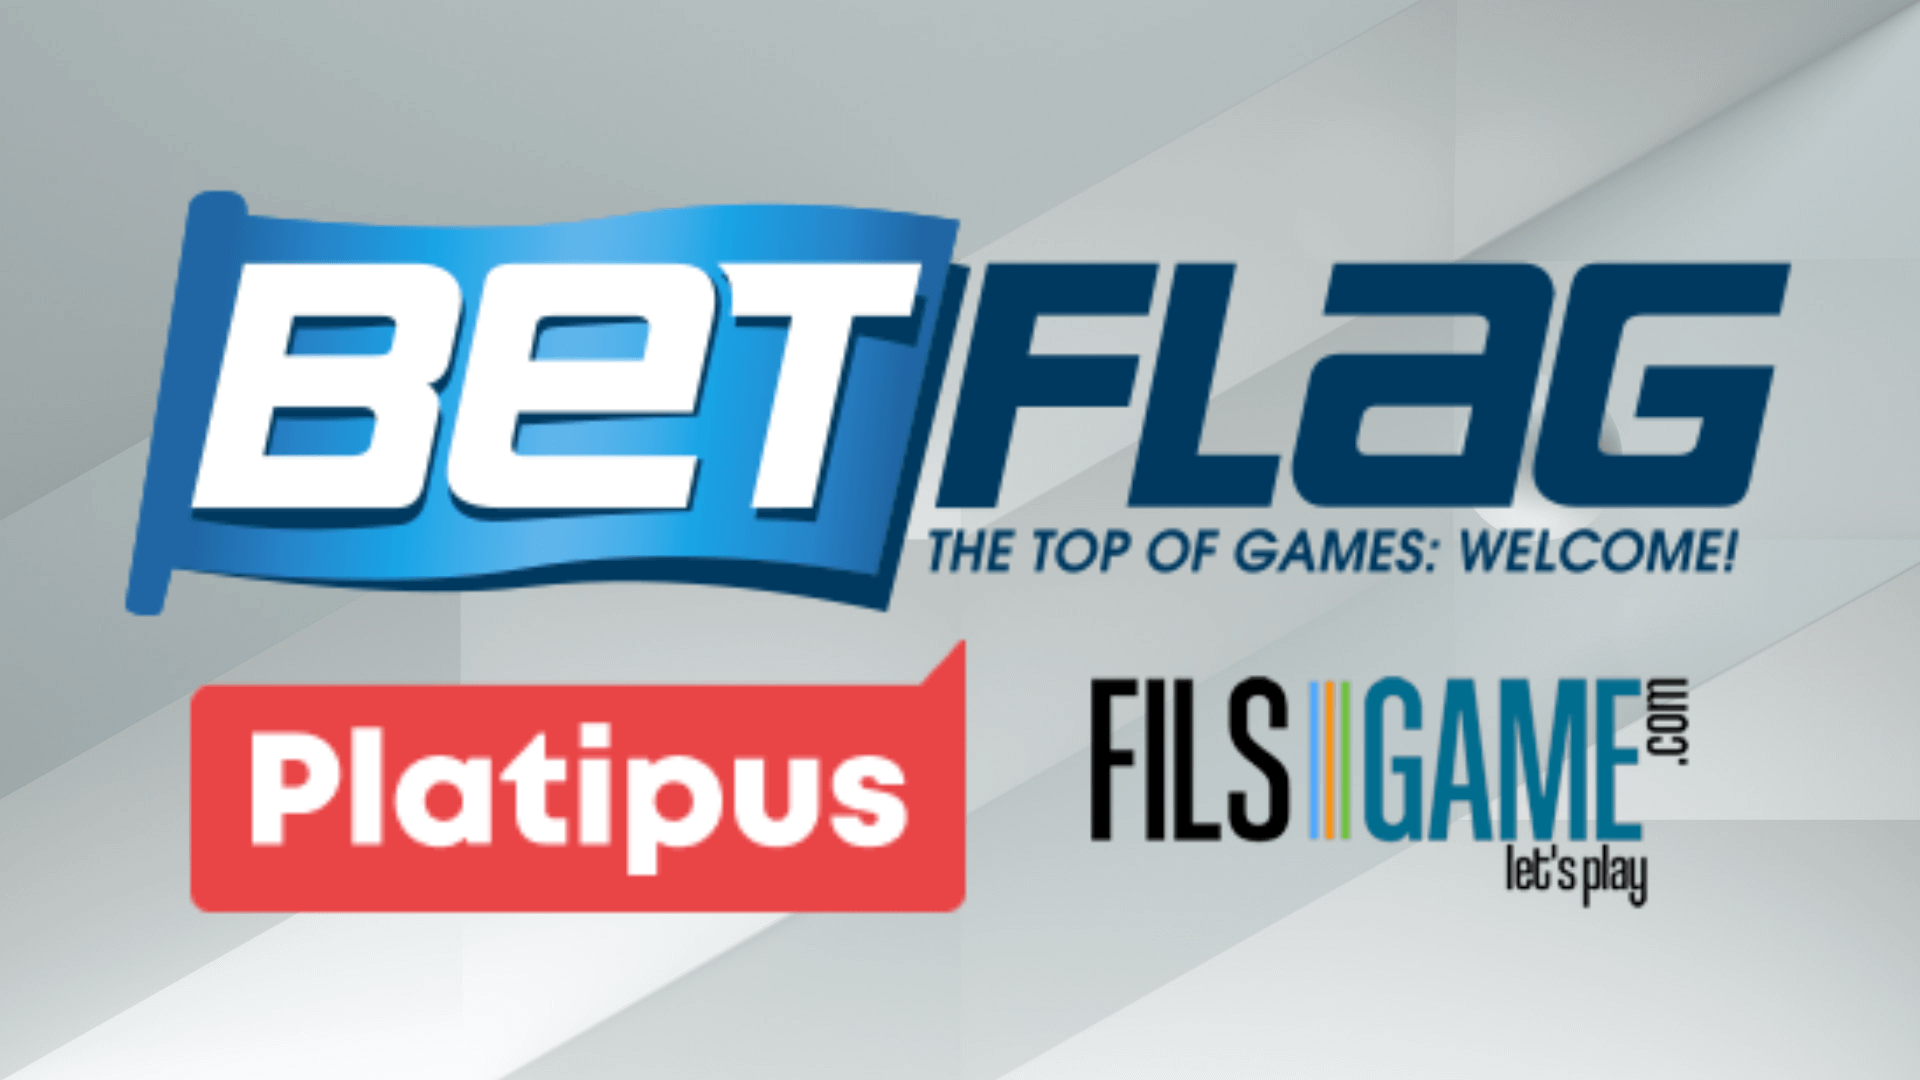 BetFlag pada bulan April berfokus pada inovasi: Platipus dan Fils Game menghadirkan 72 game baru